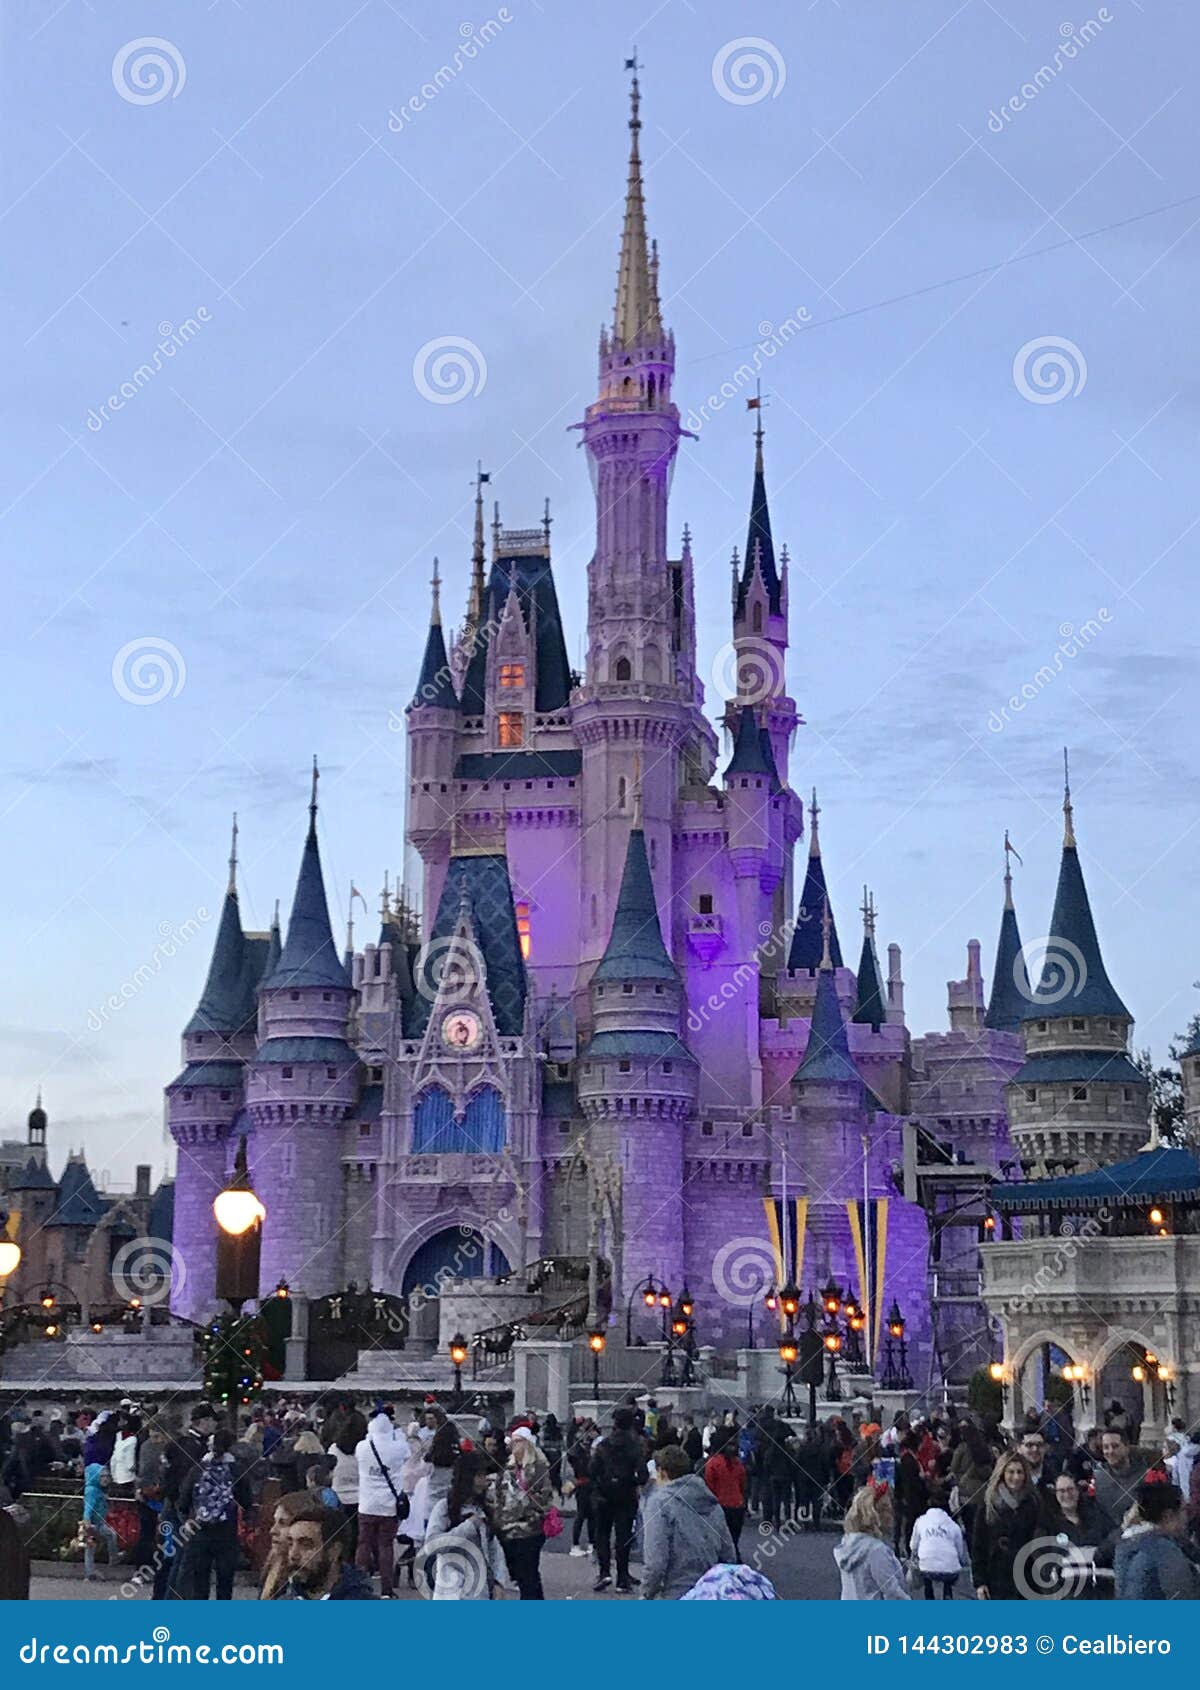 Where Dreams Come True Editorial Stock Photo Image Of Cinderella